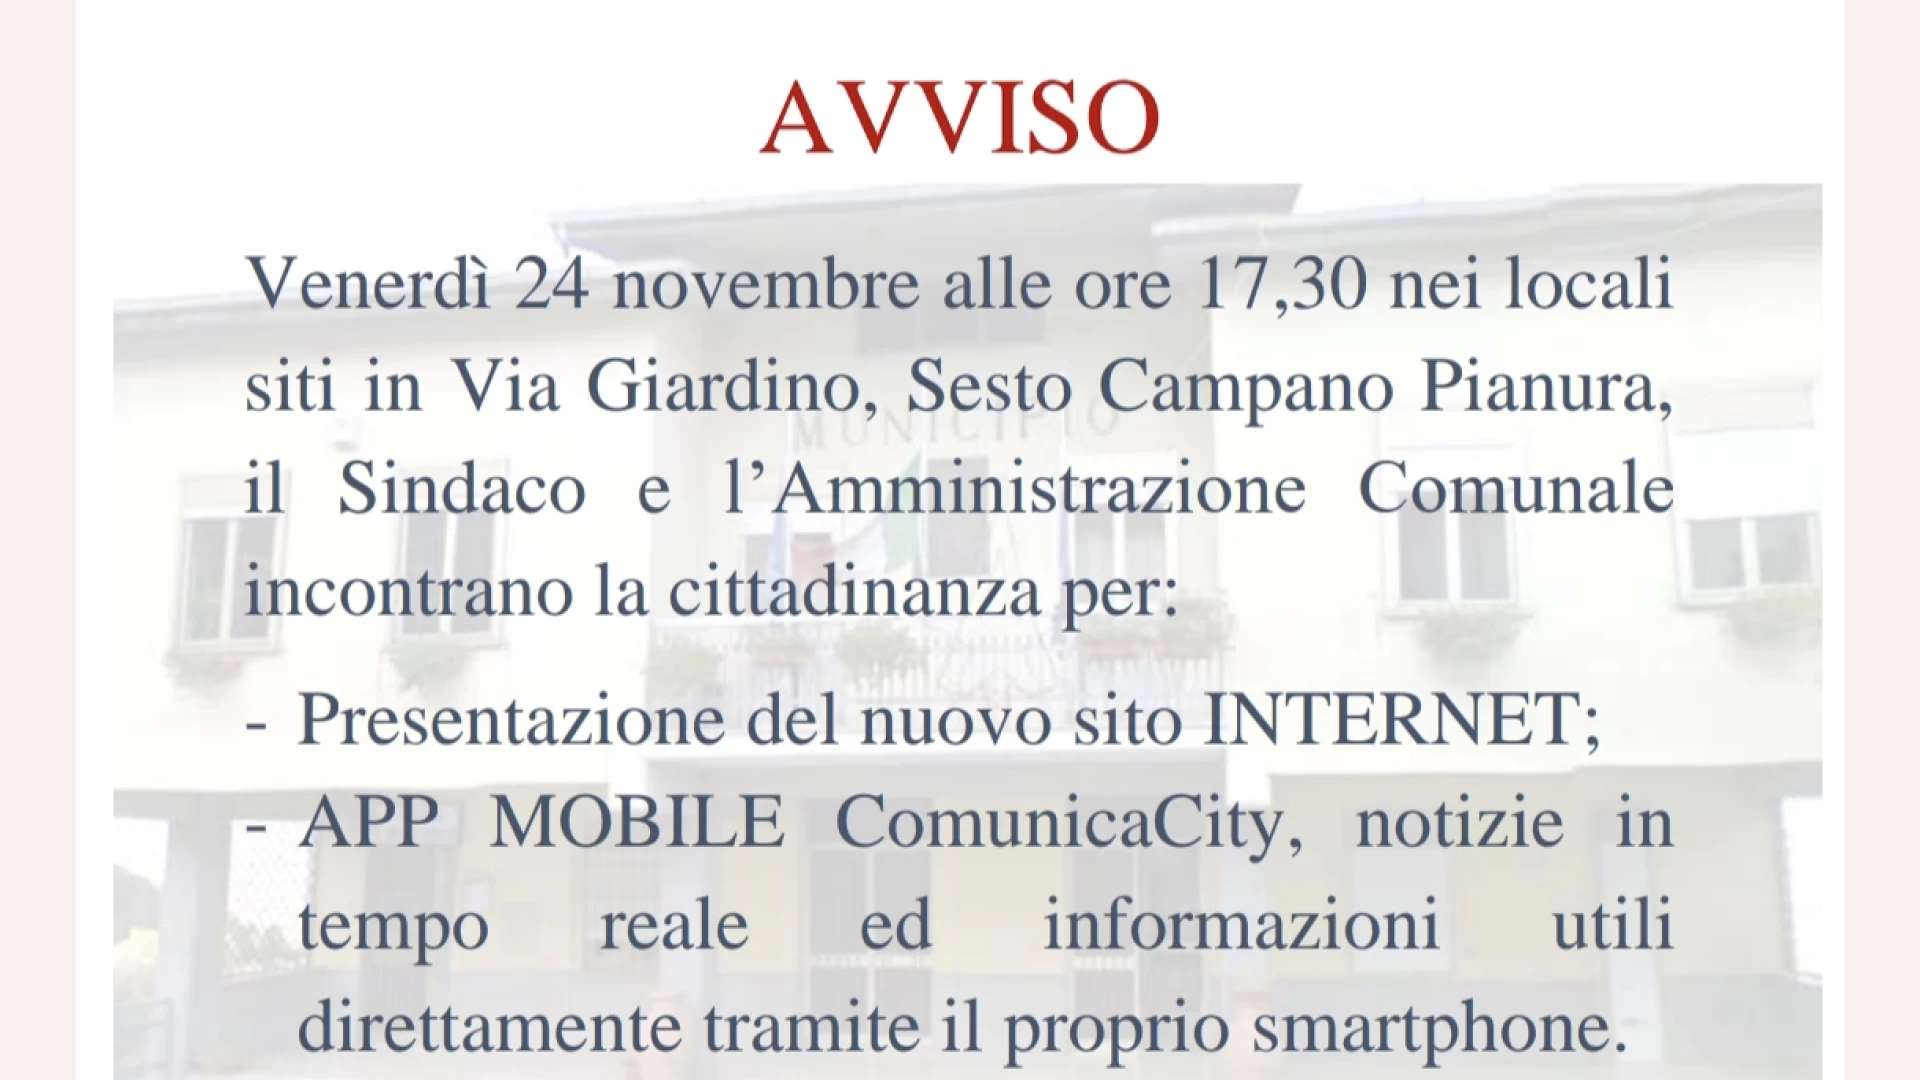 Sesto Campano: venerdì la presentazione dell'App Comunica City. Info utili alla cittadinanza